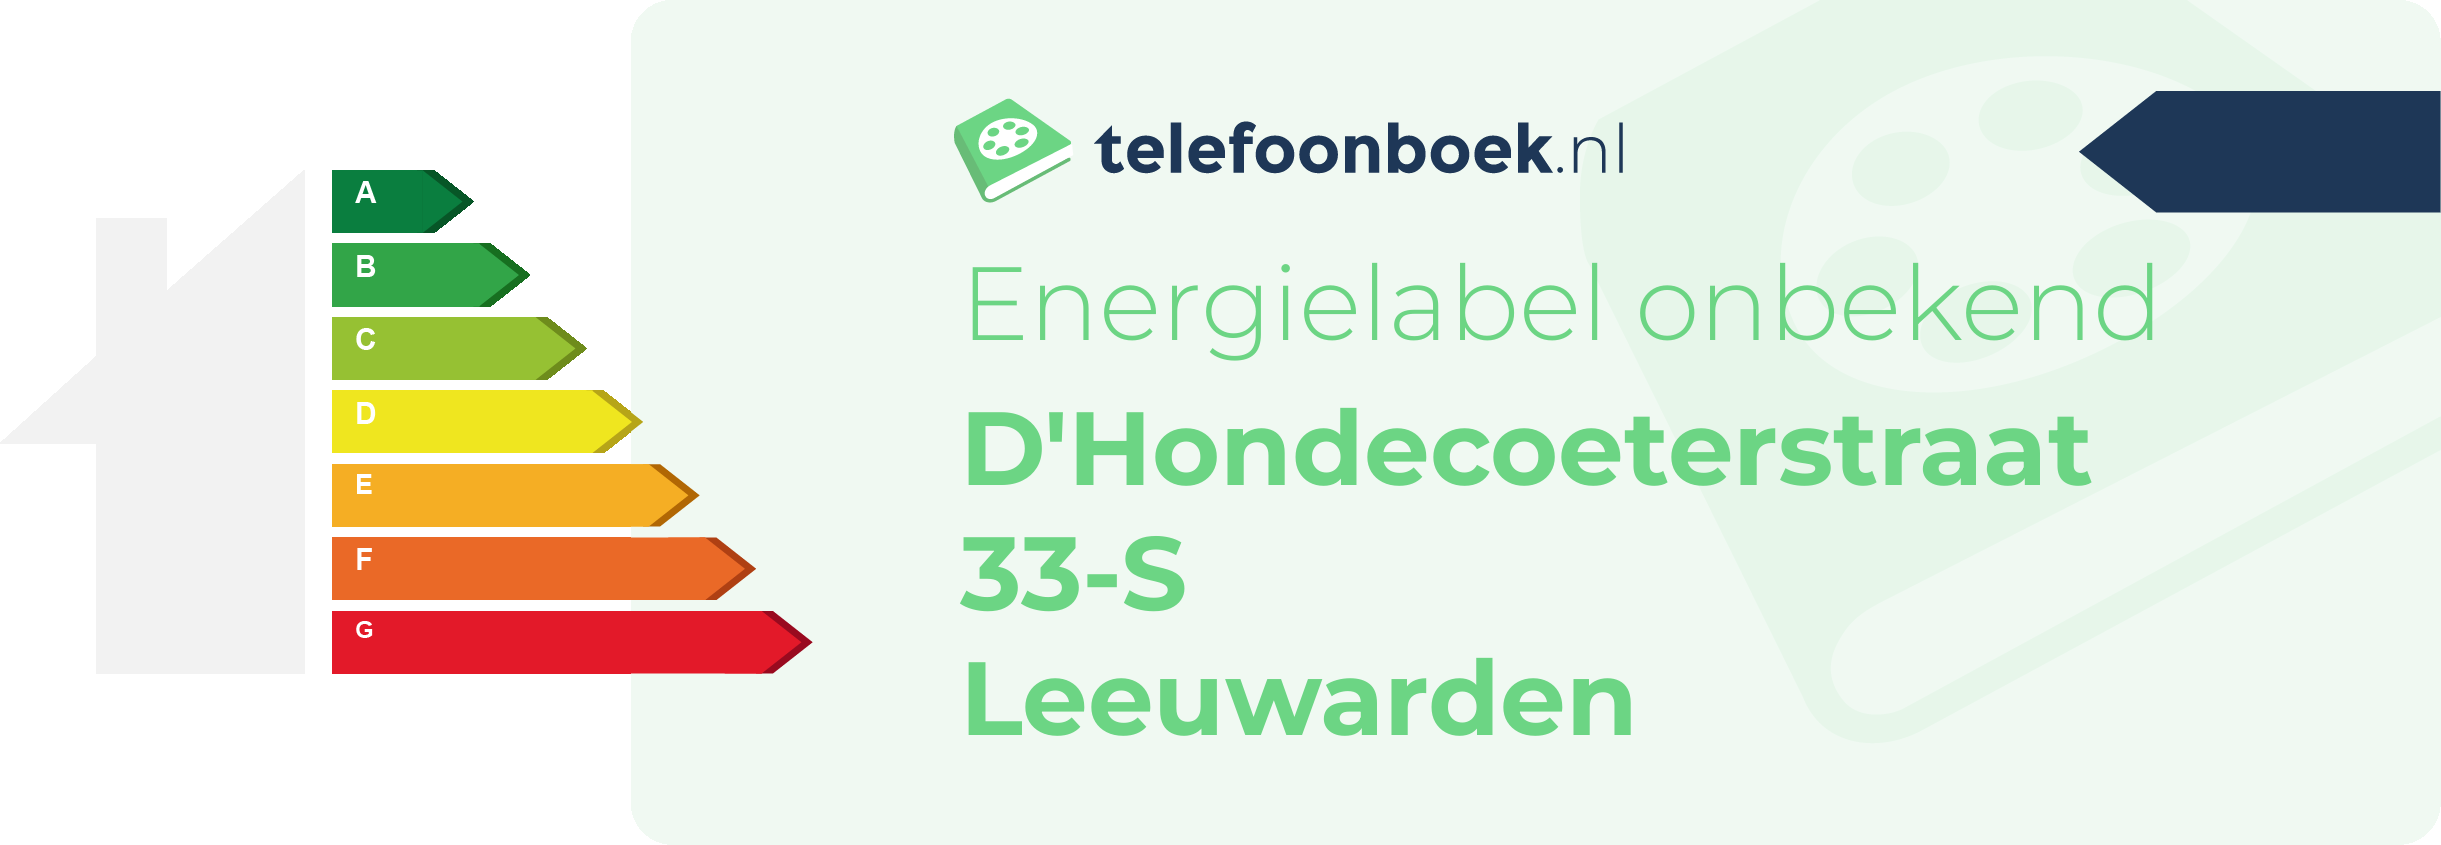 Energielabel D'Hondecoeterstraat 33-S Leeuwarden